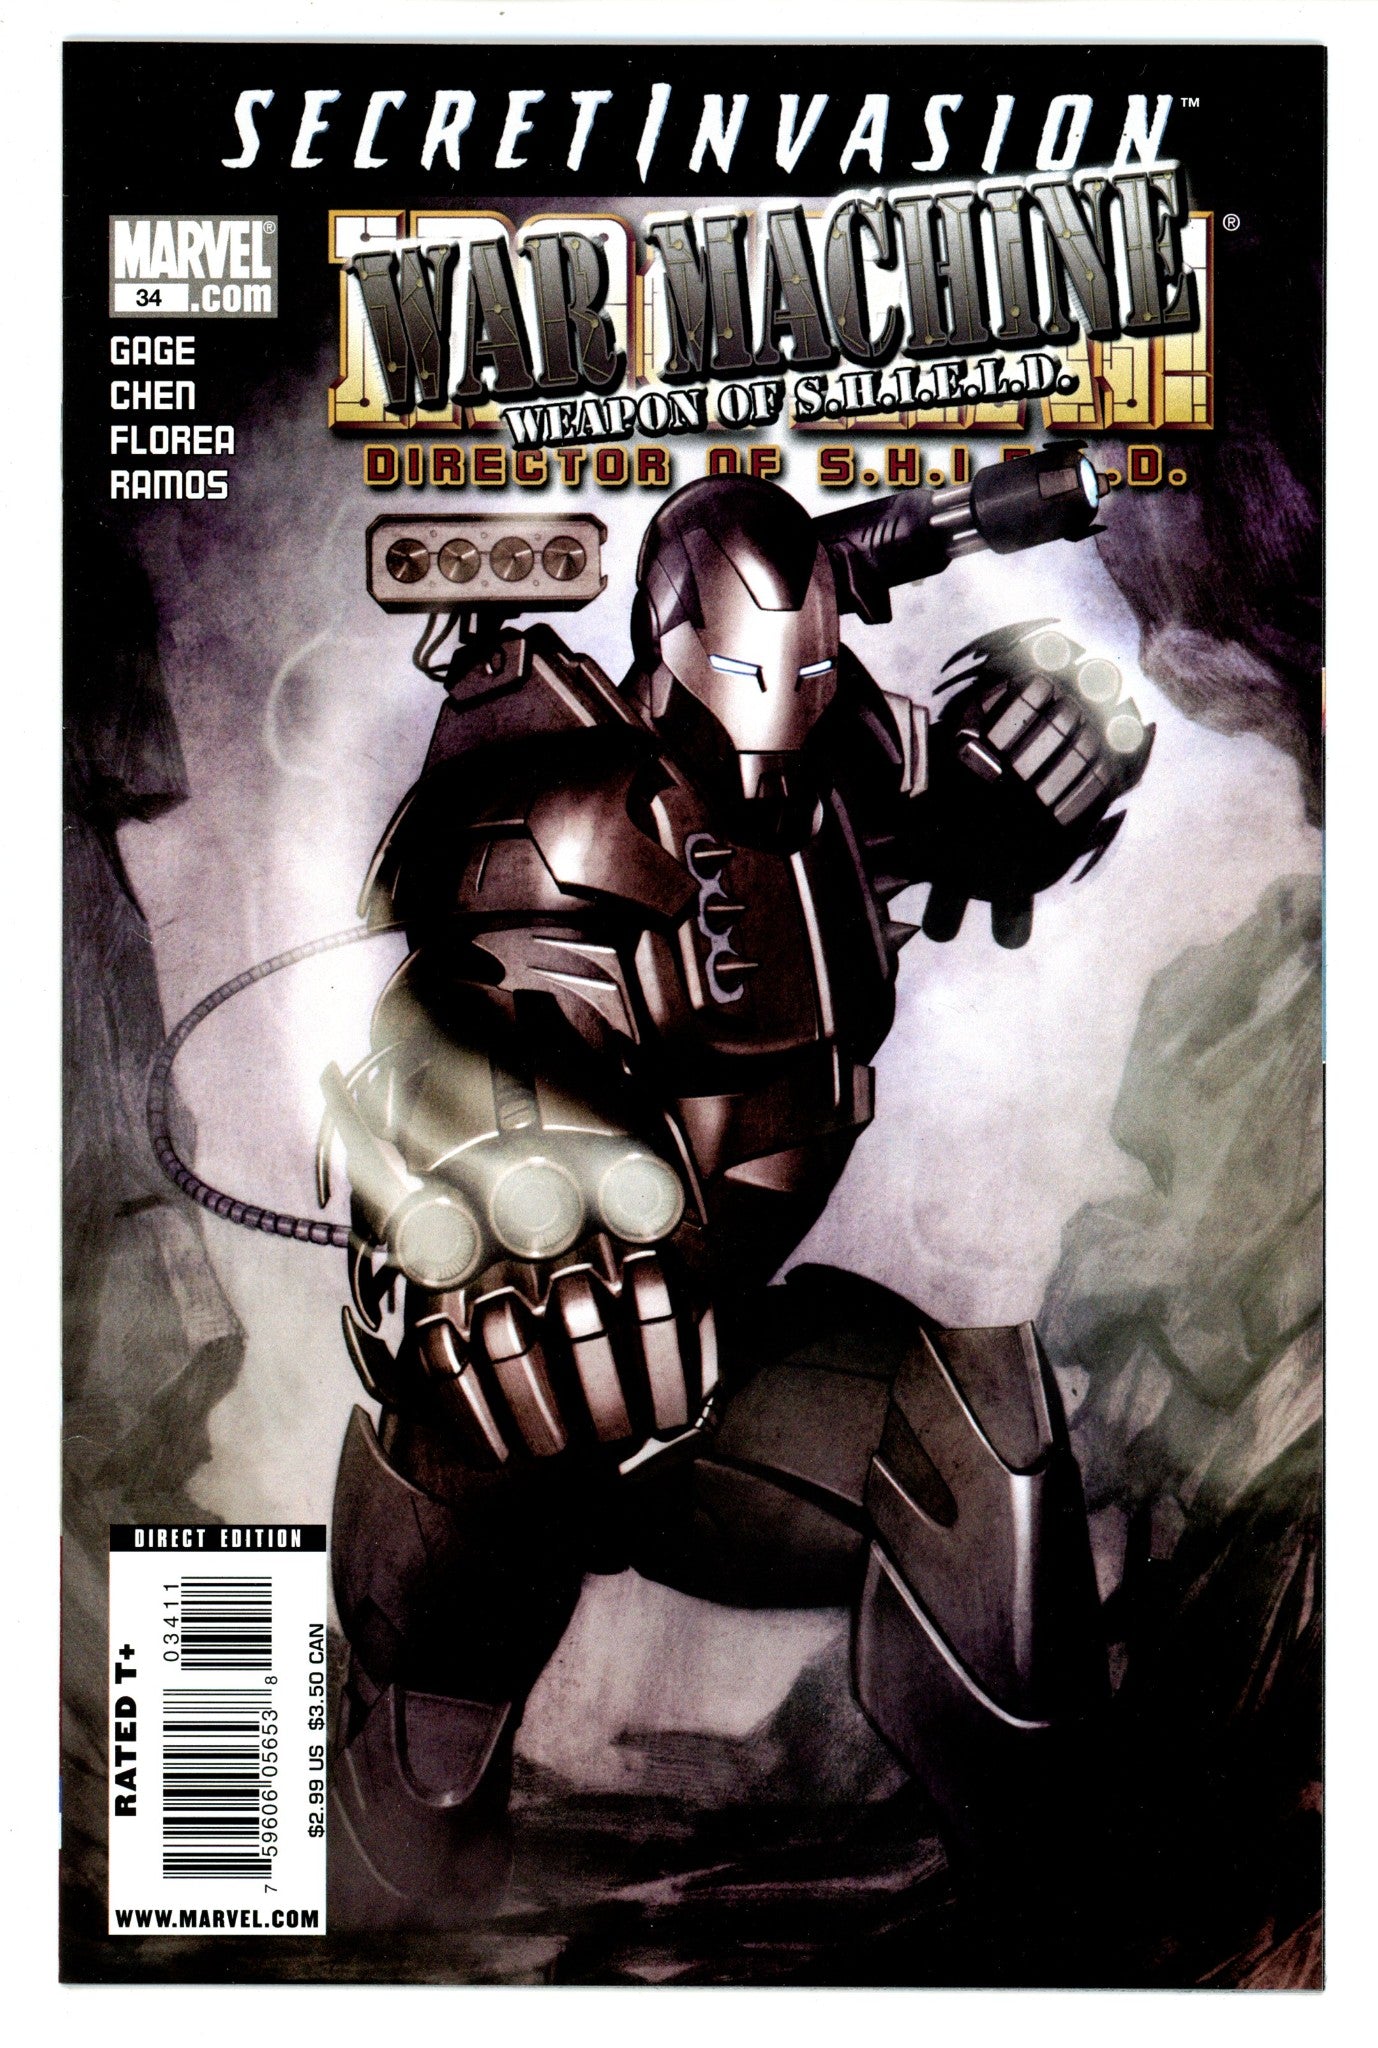 Iron Man: Director of S.H.I.E.L.D. Vol 4 34 High Grade (2008) 